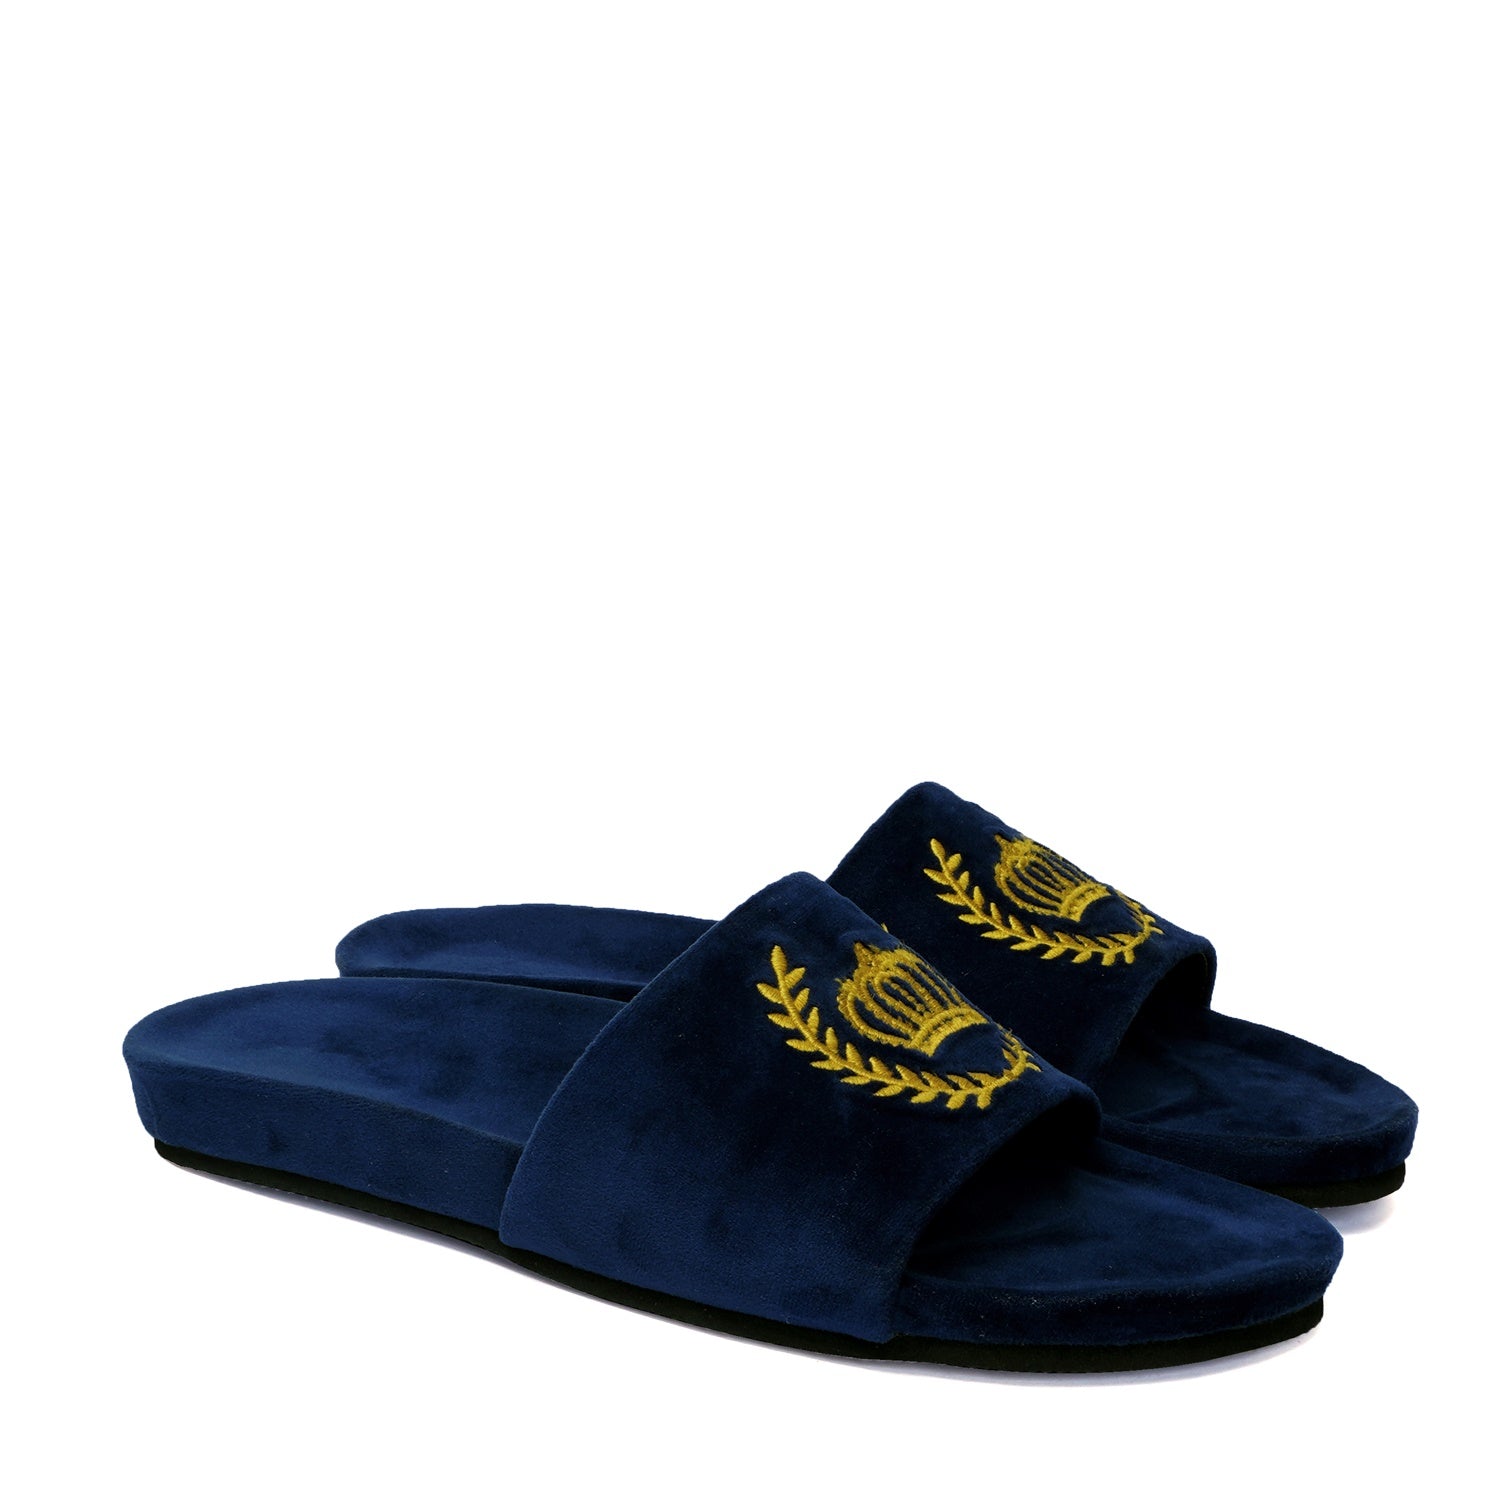 Golden Crown Embroidery On Navy Blue Velvet Slide-In-Slipper